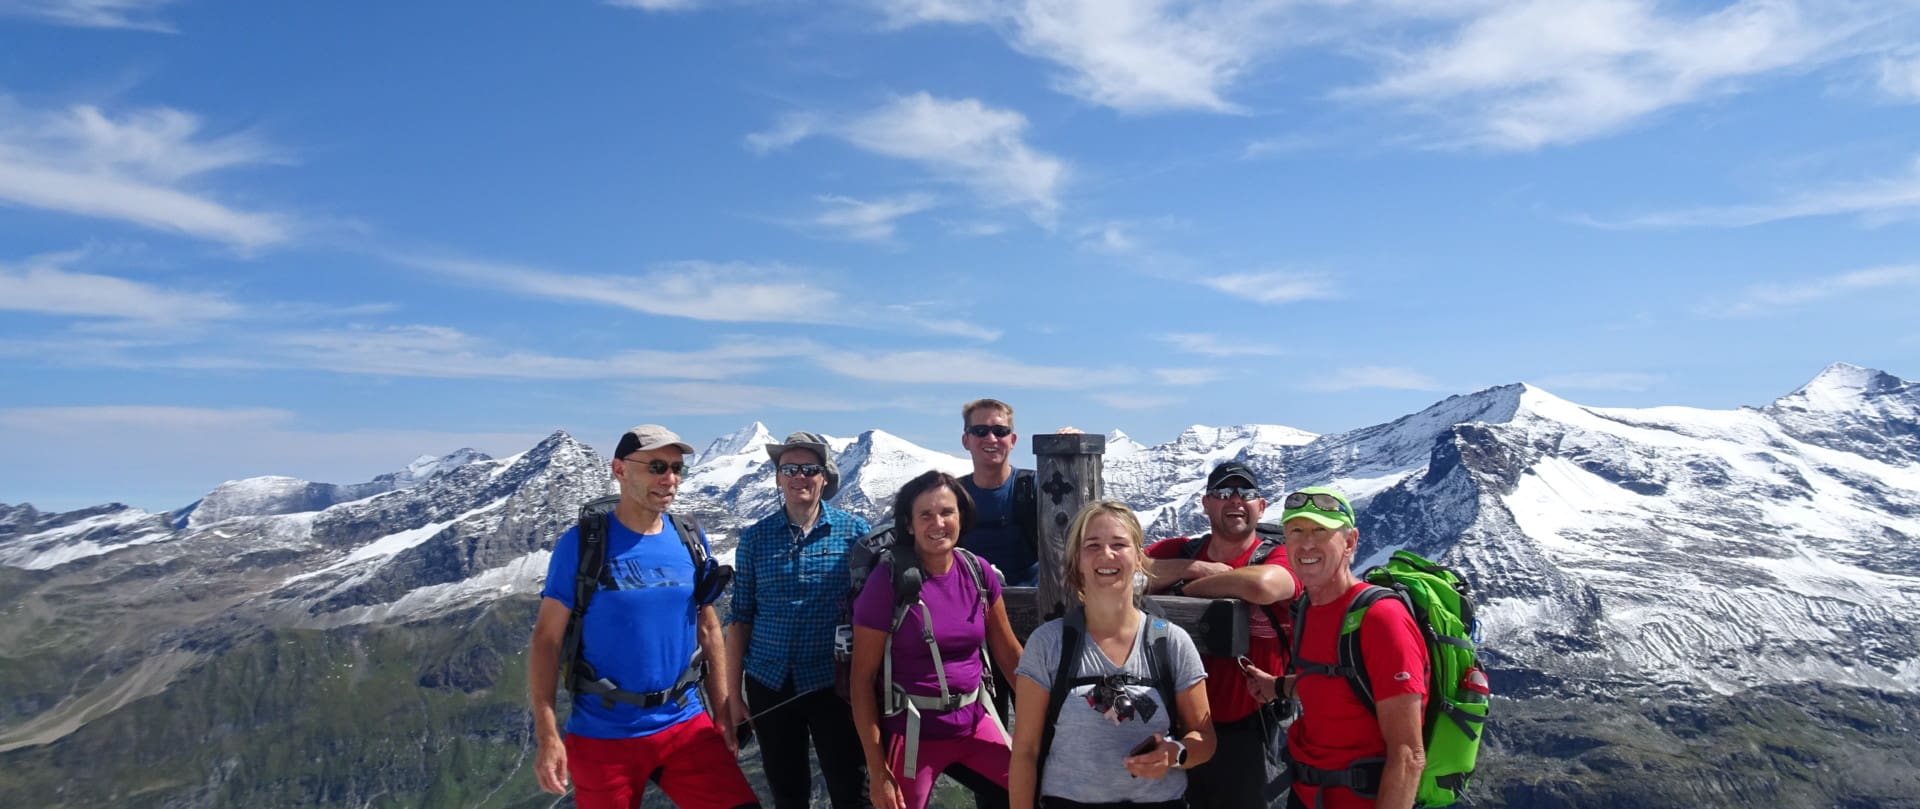 Wandergruppe am Hohen Fürlegg vor den Gipfeln des Stubachtals